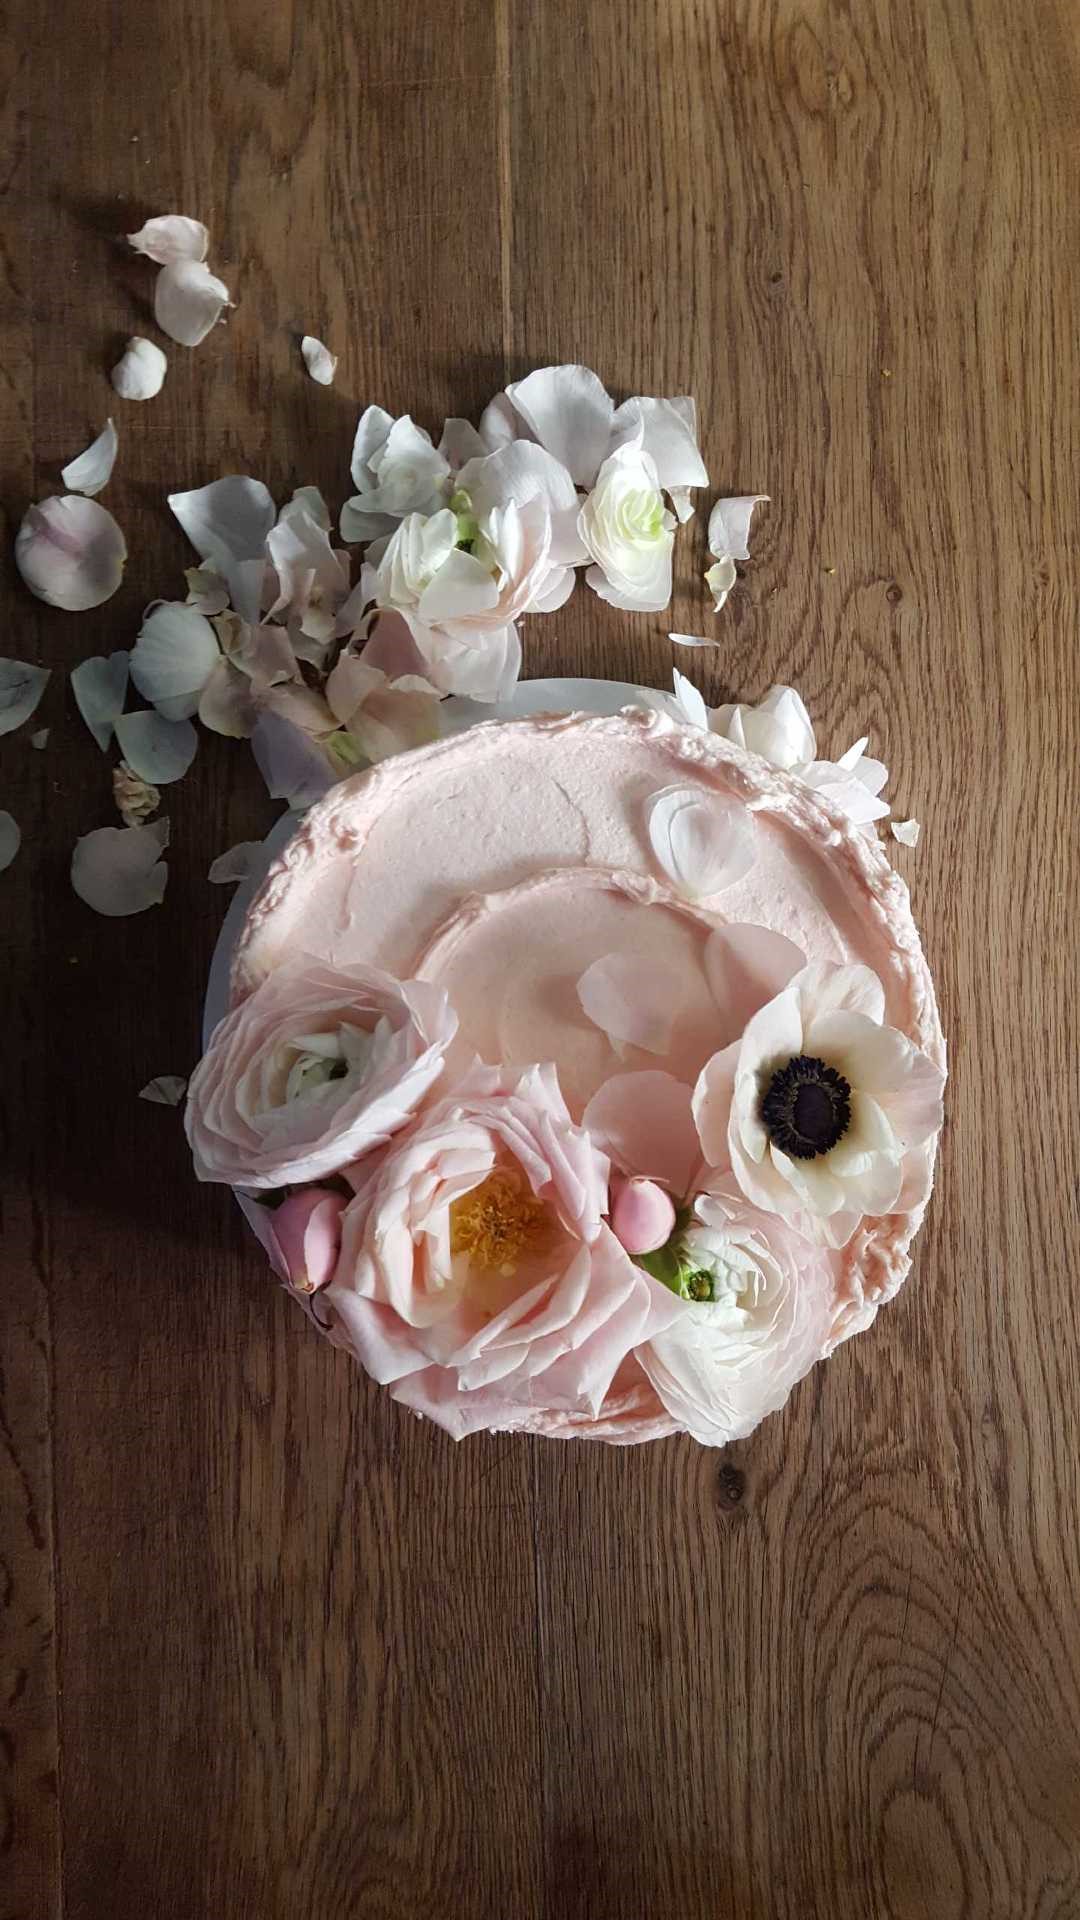 Claire Ptak cake decorated with fresh flowers. Violet Bakery. #claireptak #cakedecorating #freshflowers #baking #violetbakery #violetcakes #shabbychic